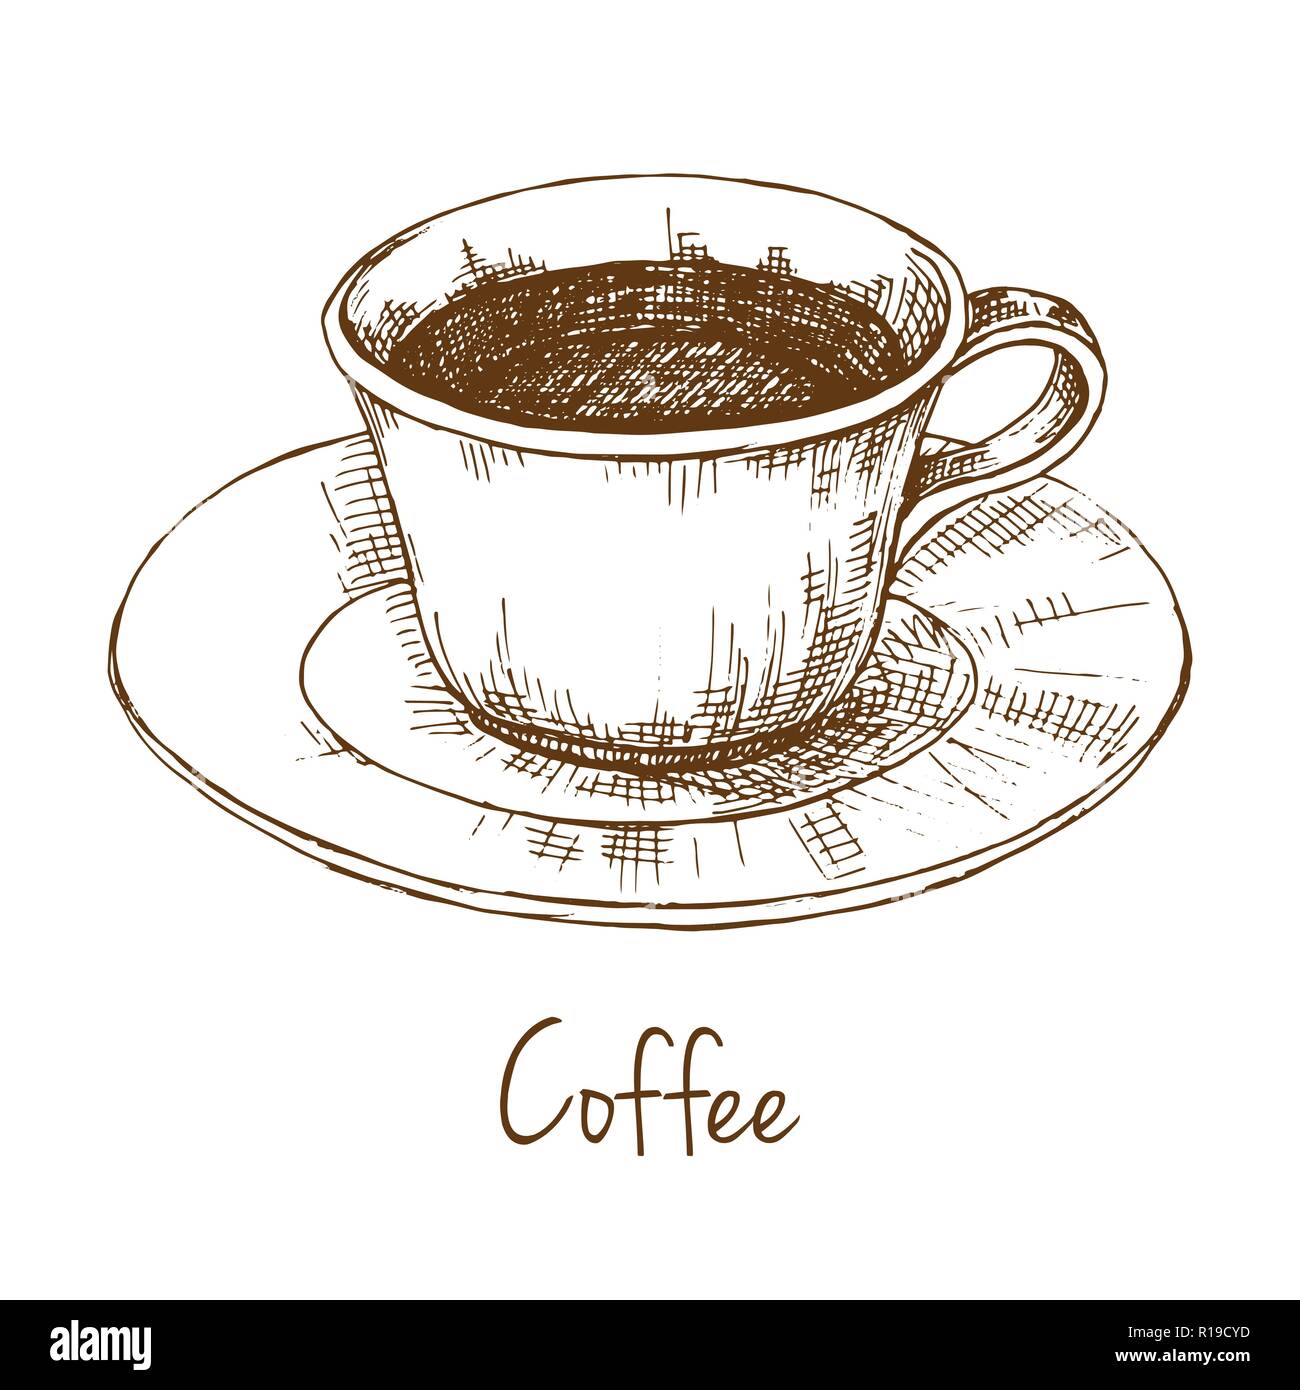 https://c8.alamy.com/compit/r19cyd/disegna-la-tazza-di-caffe-su-un-piattino-l-iscrizione-e-il-caffe-illustrazione-vettoriale-di-un-disegno-stile-r19cyd.jpg